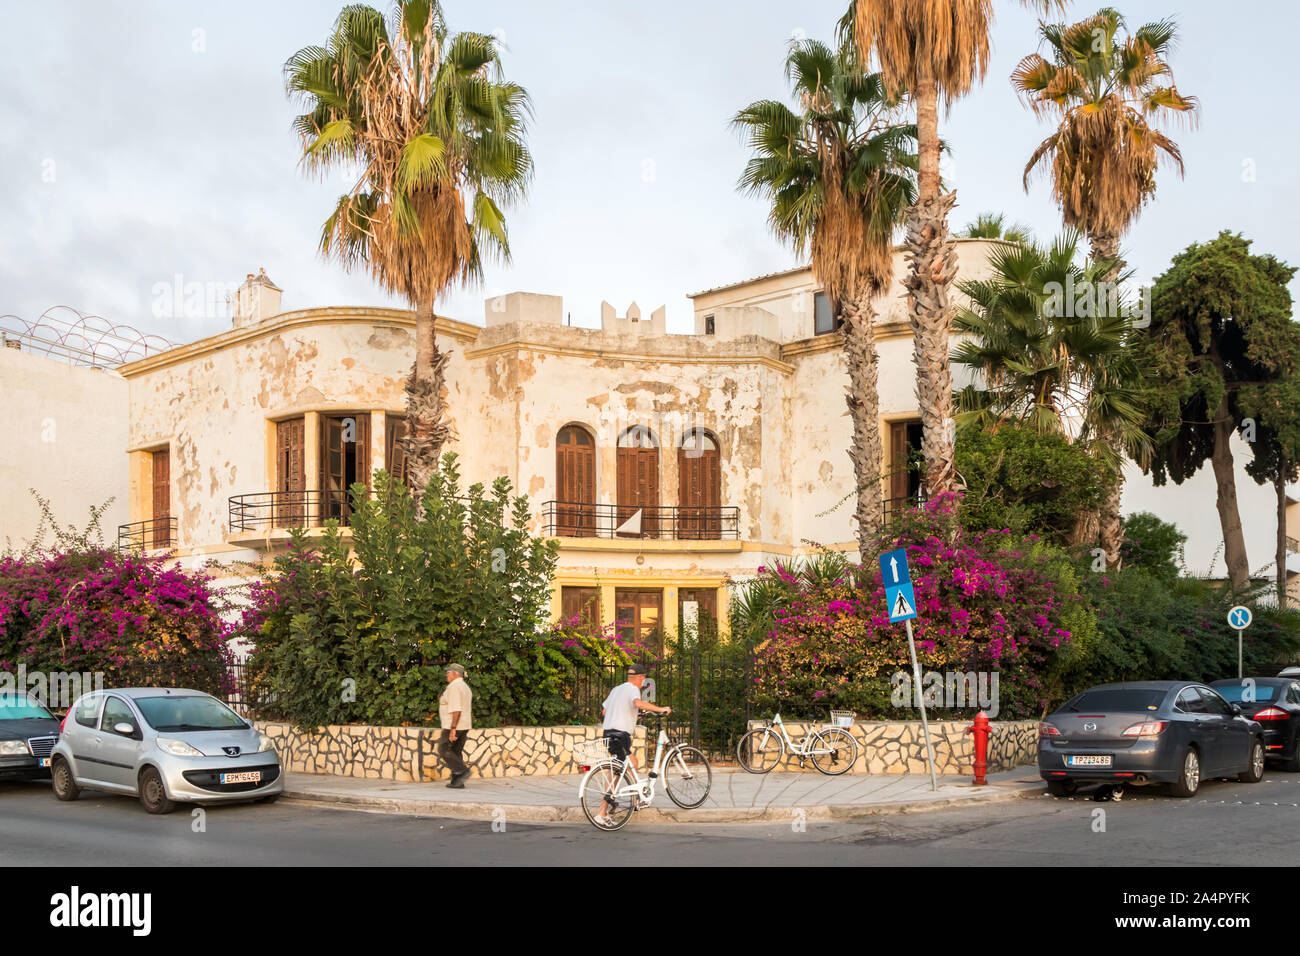 Kos, Griechenland - 19. September 2019: Typische Architektur mit bougainvillaea Blumen. Die Insel ist ein beliebtes Reiseziel Stockfoto